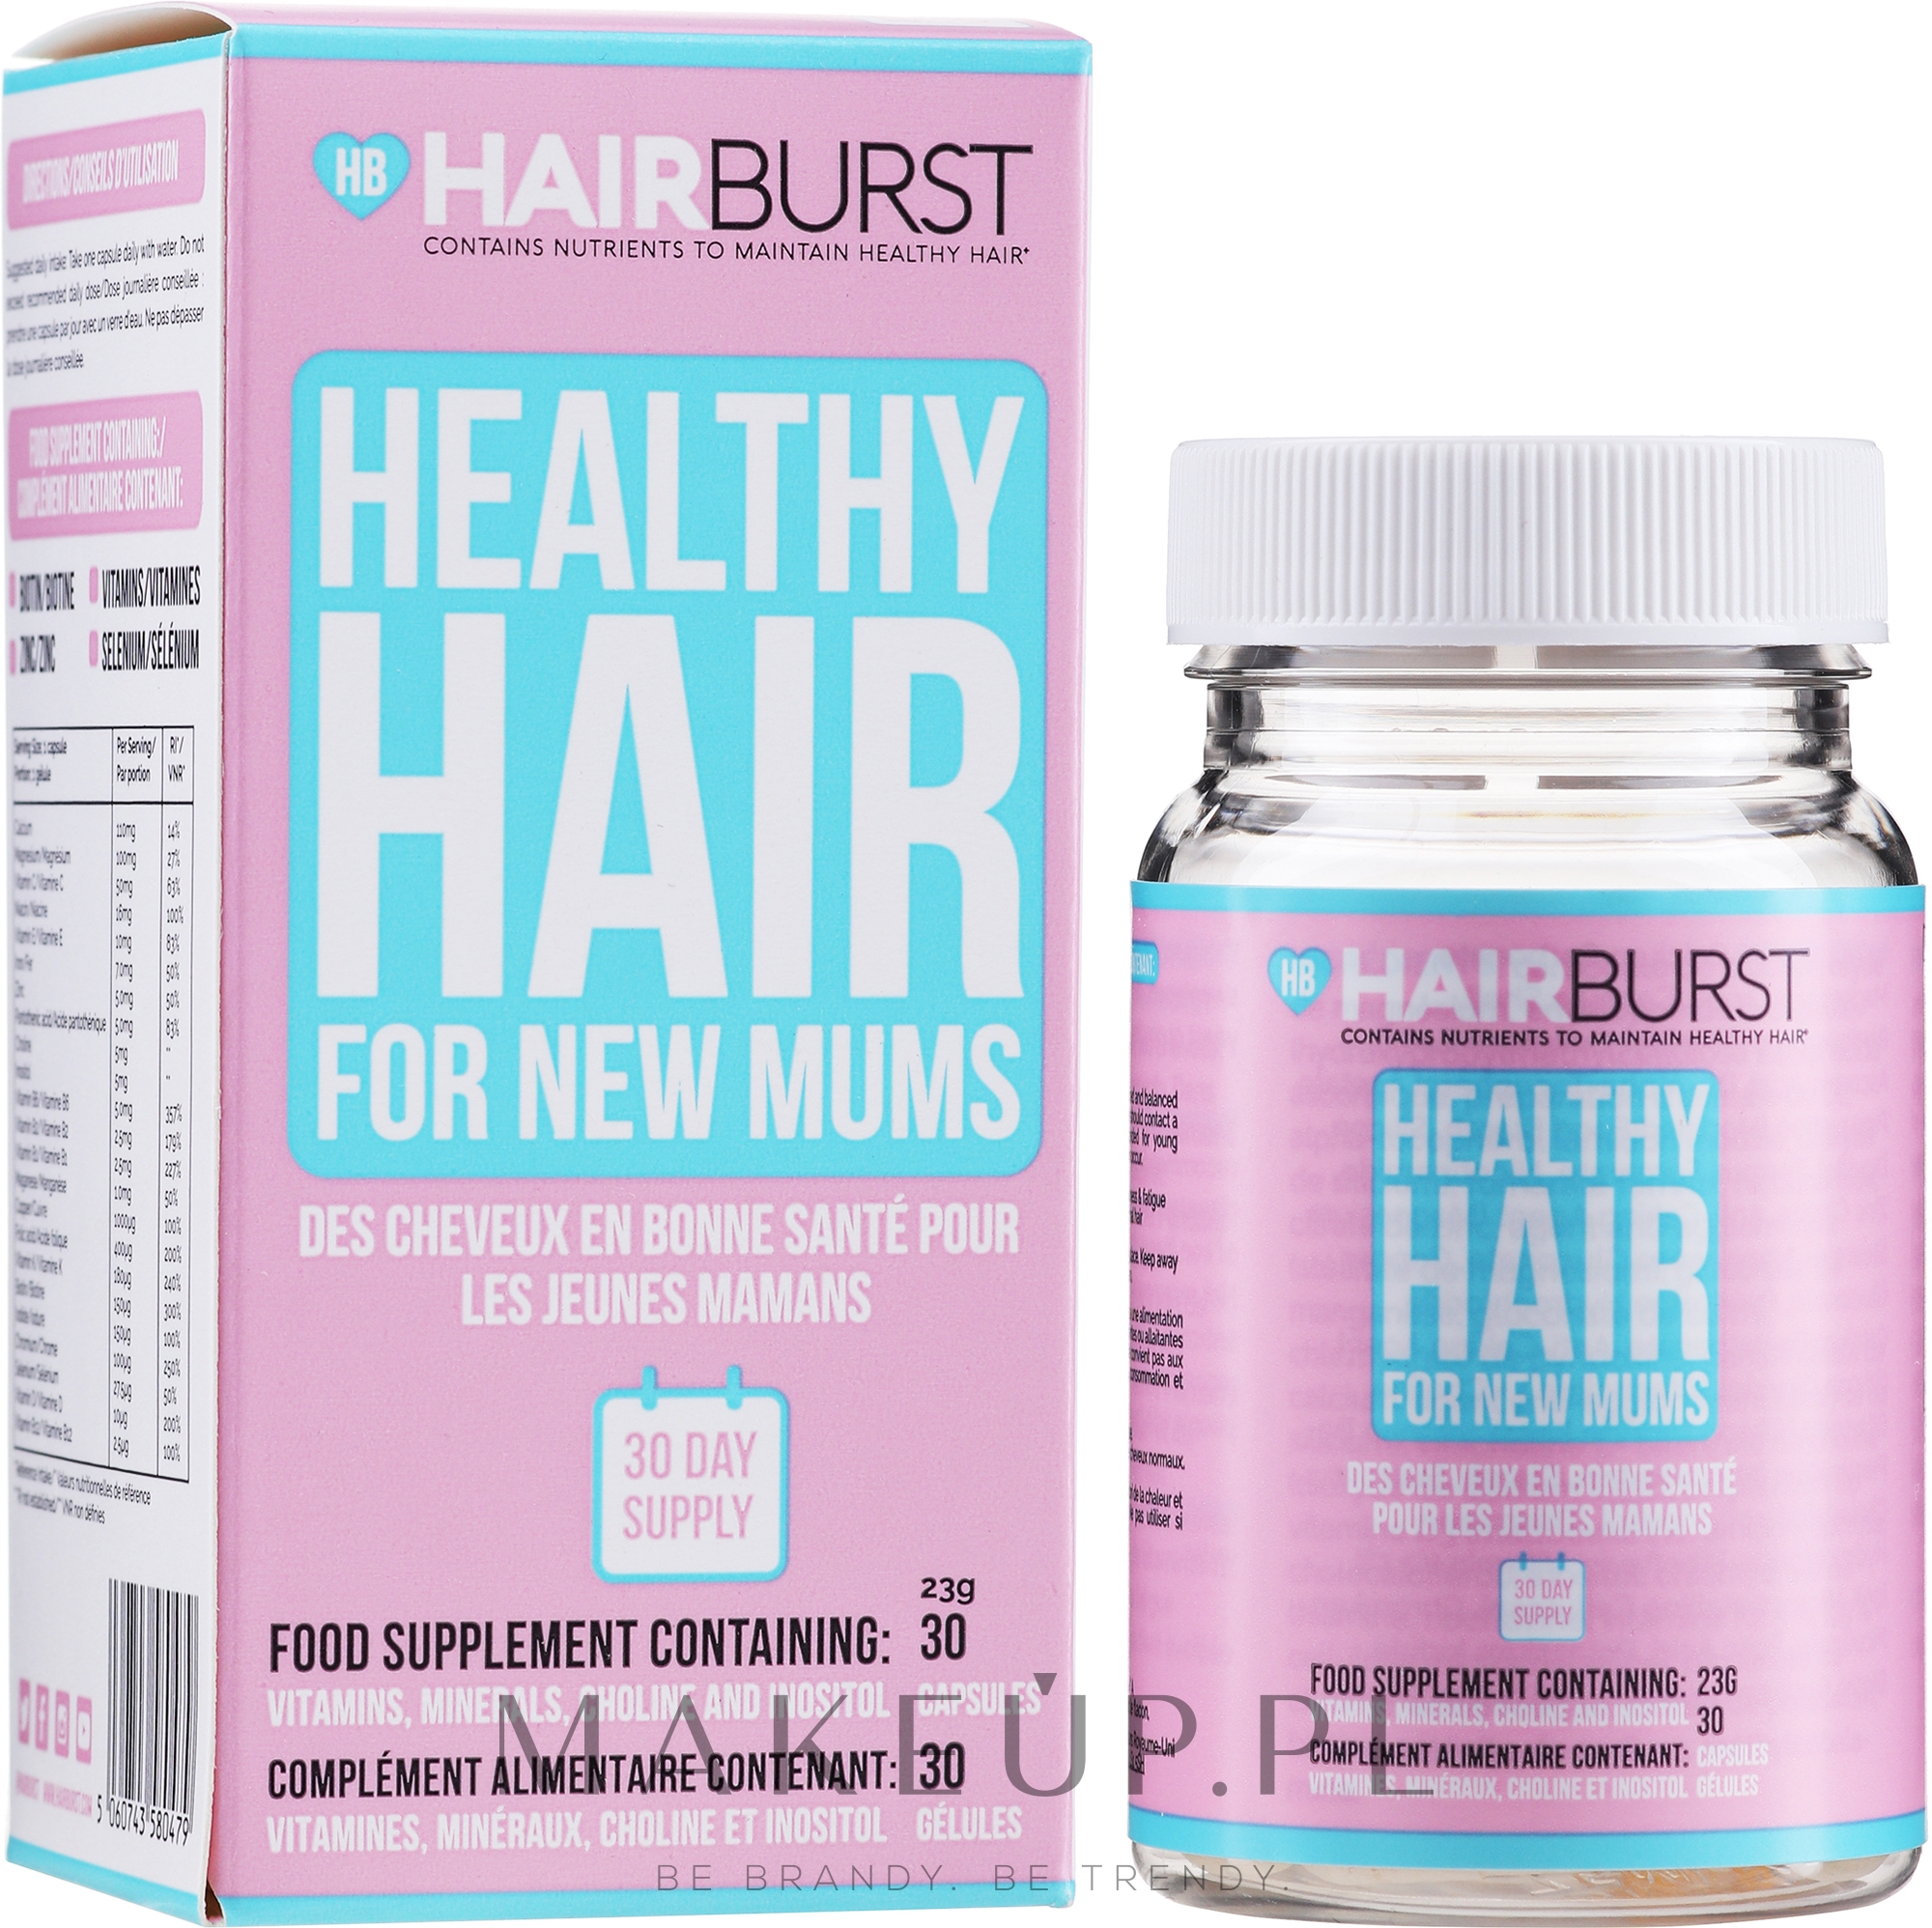 Witaminy w kapsułkach na porost i wzmocnienie włosów dla kobiet w ciąży - Hairburst Healthy Hair Vitamins For New Mums — Zdjęcie 30 szt.